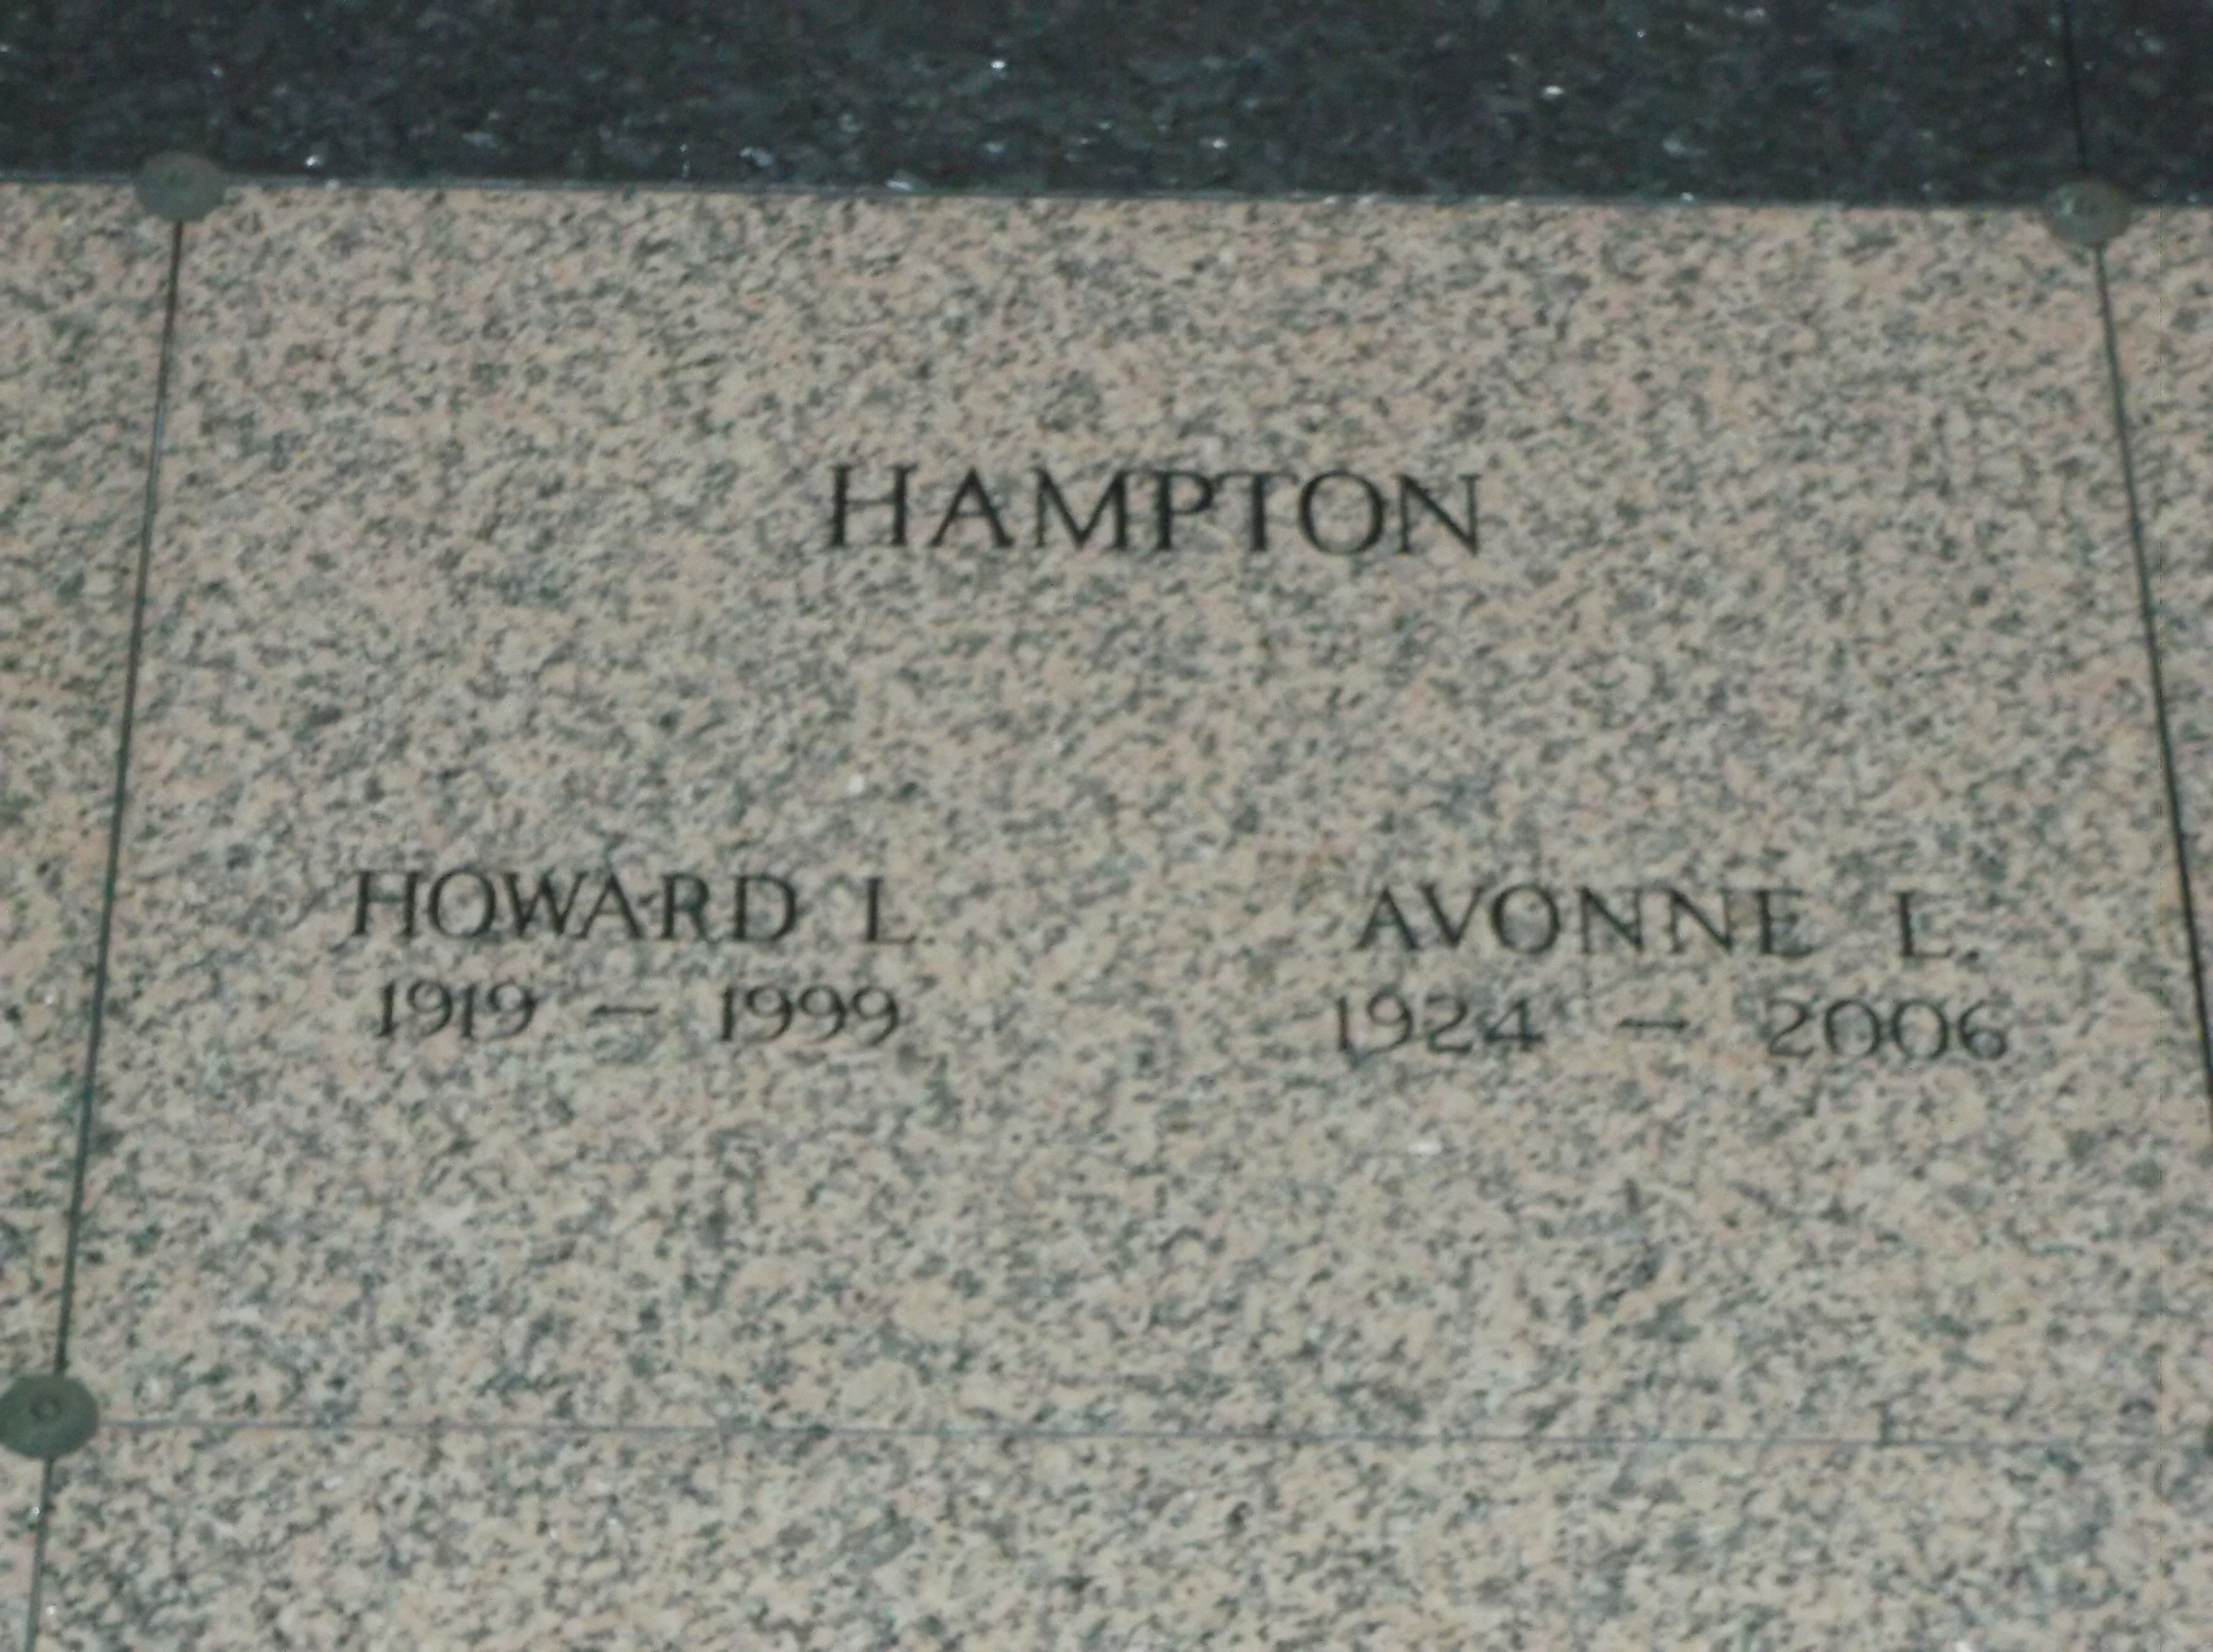 Howard L Hampton